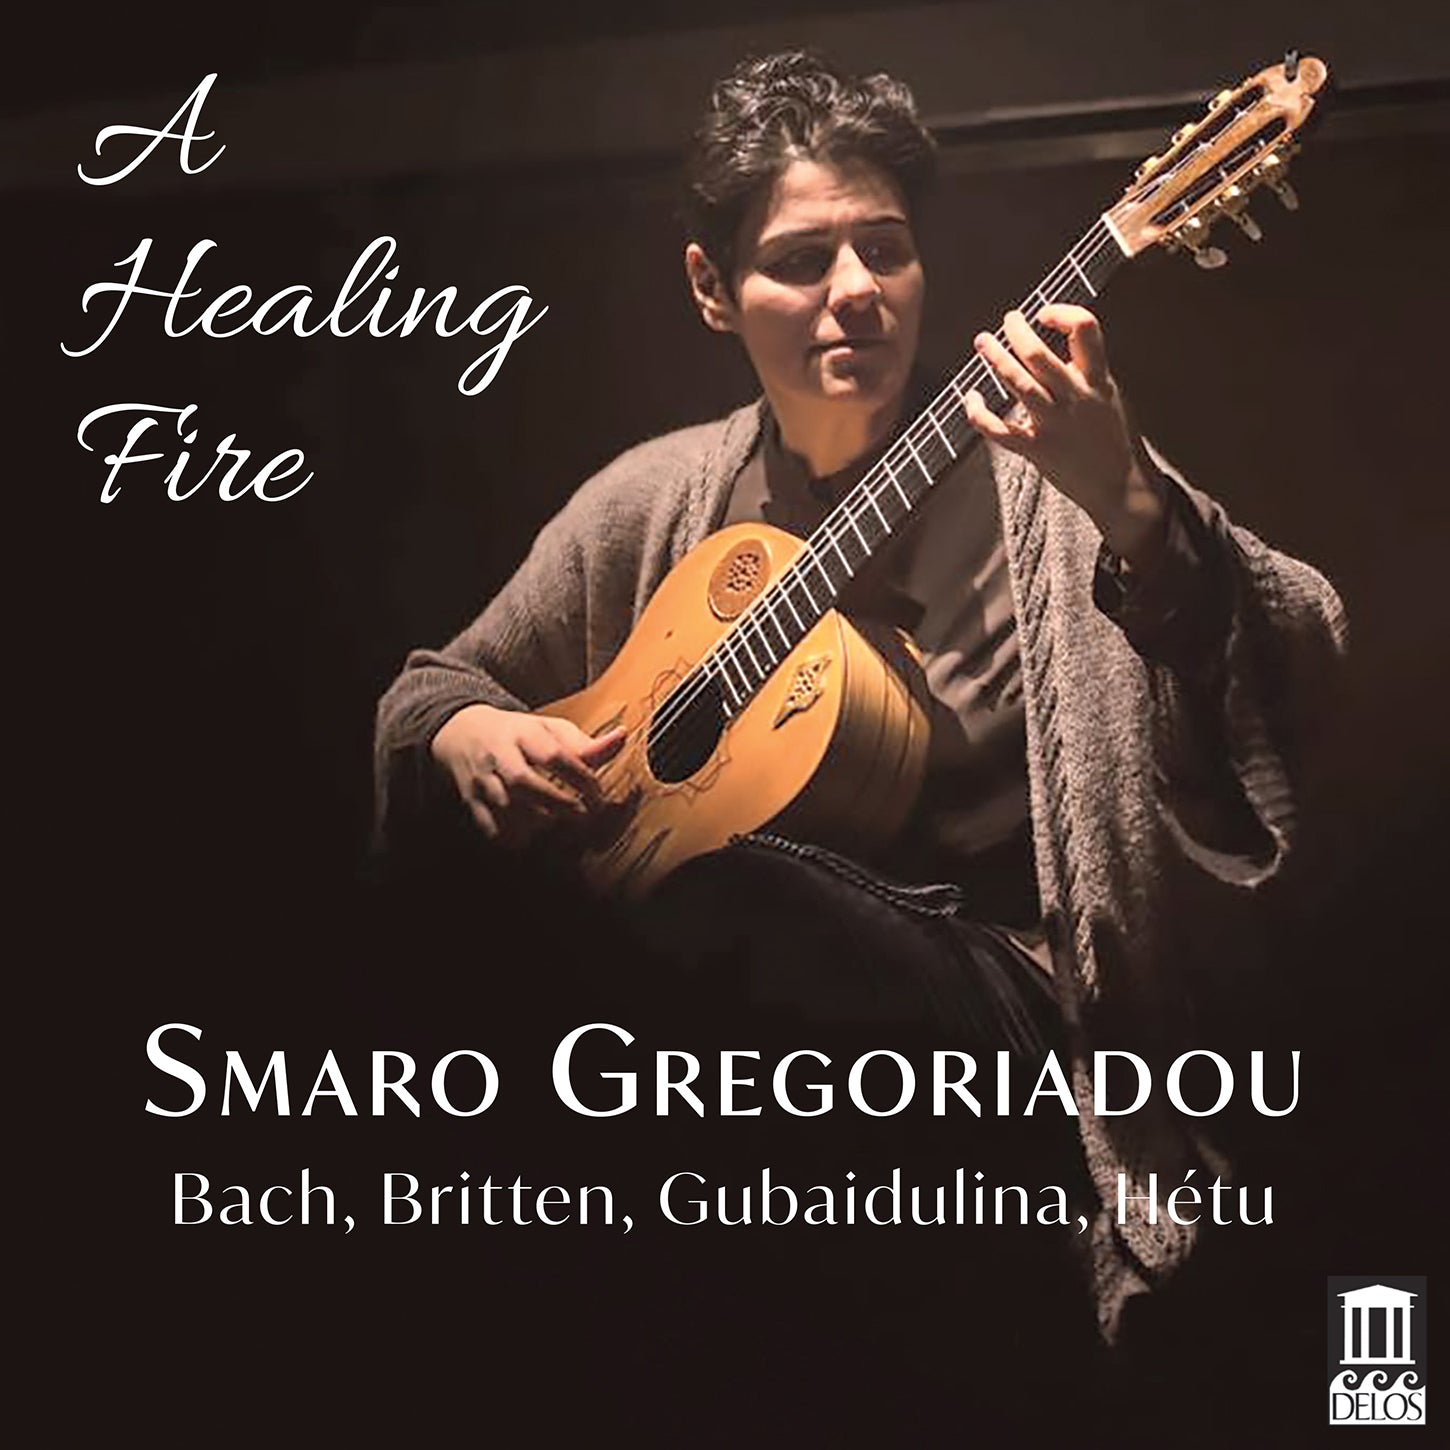 A Healing Fire / Smaro Gregoriadou